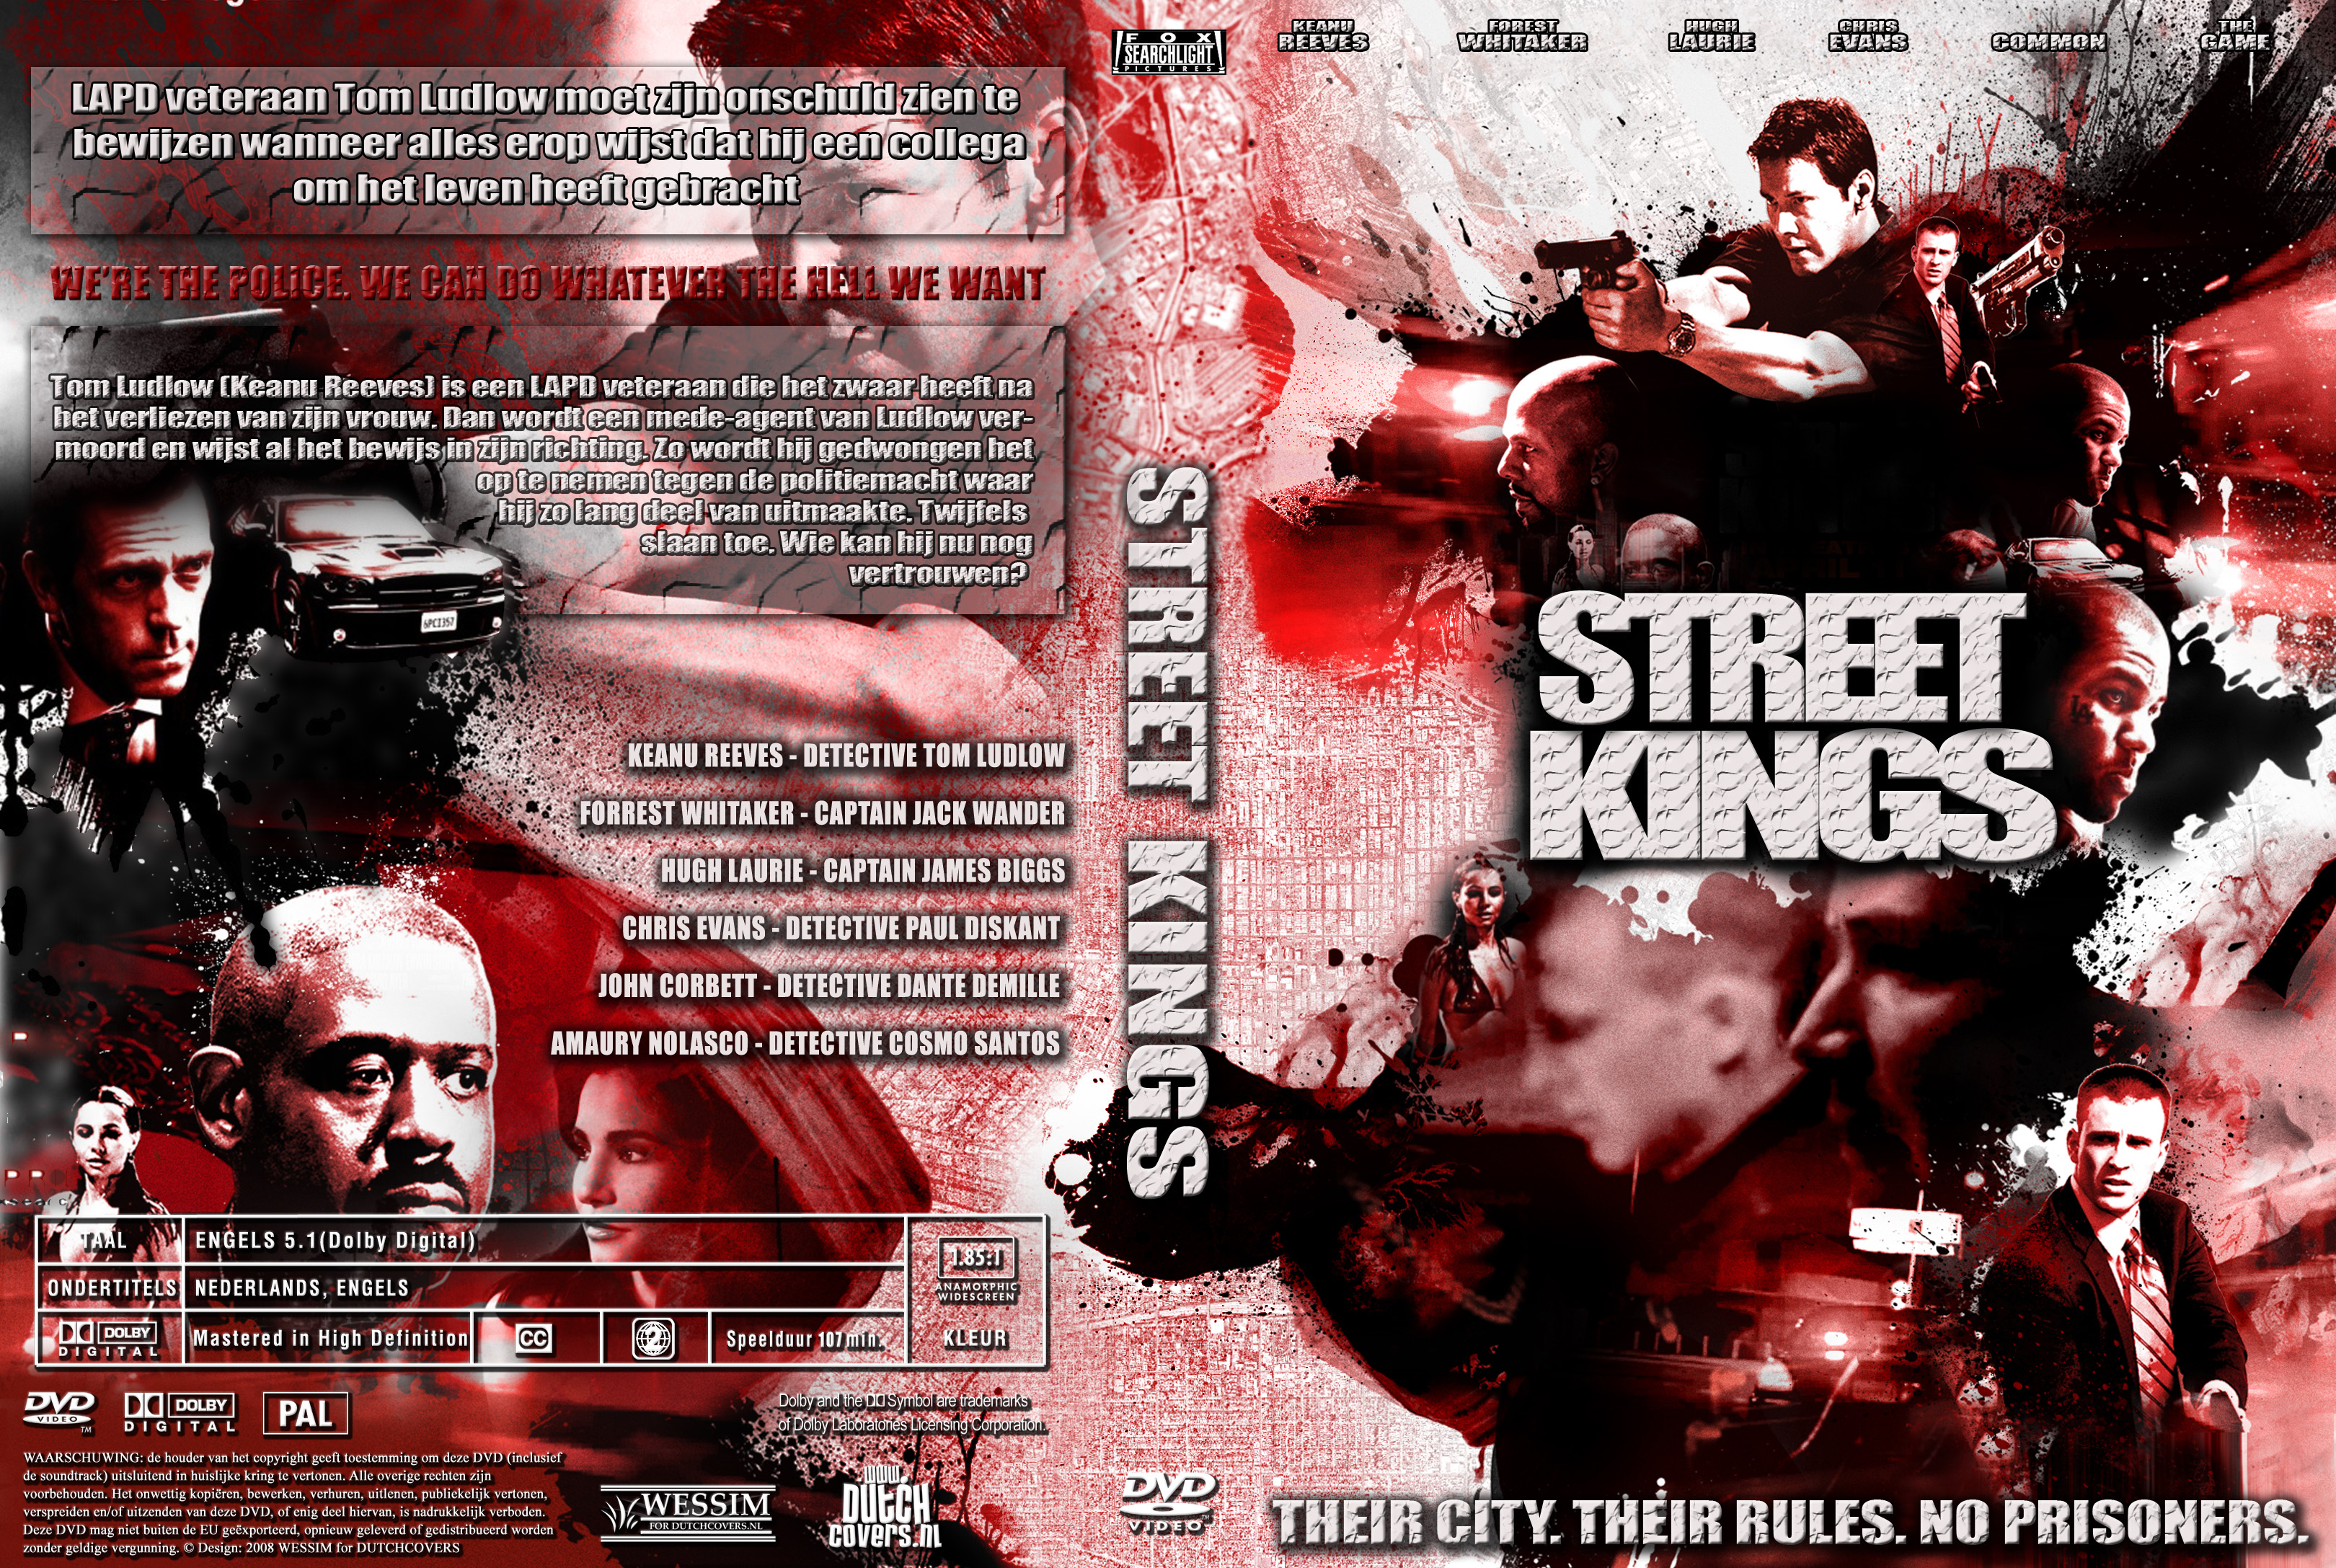 Street Kings